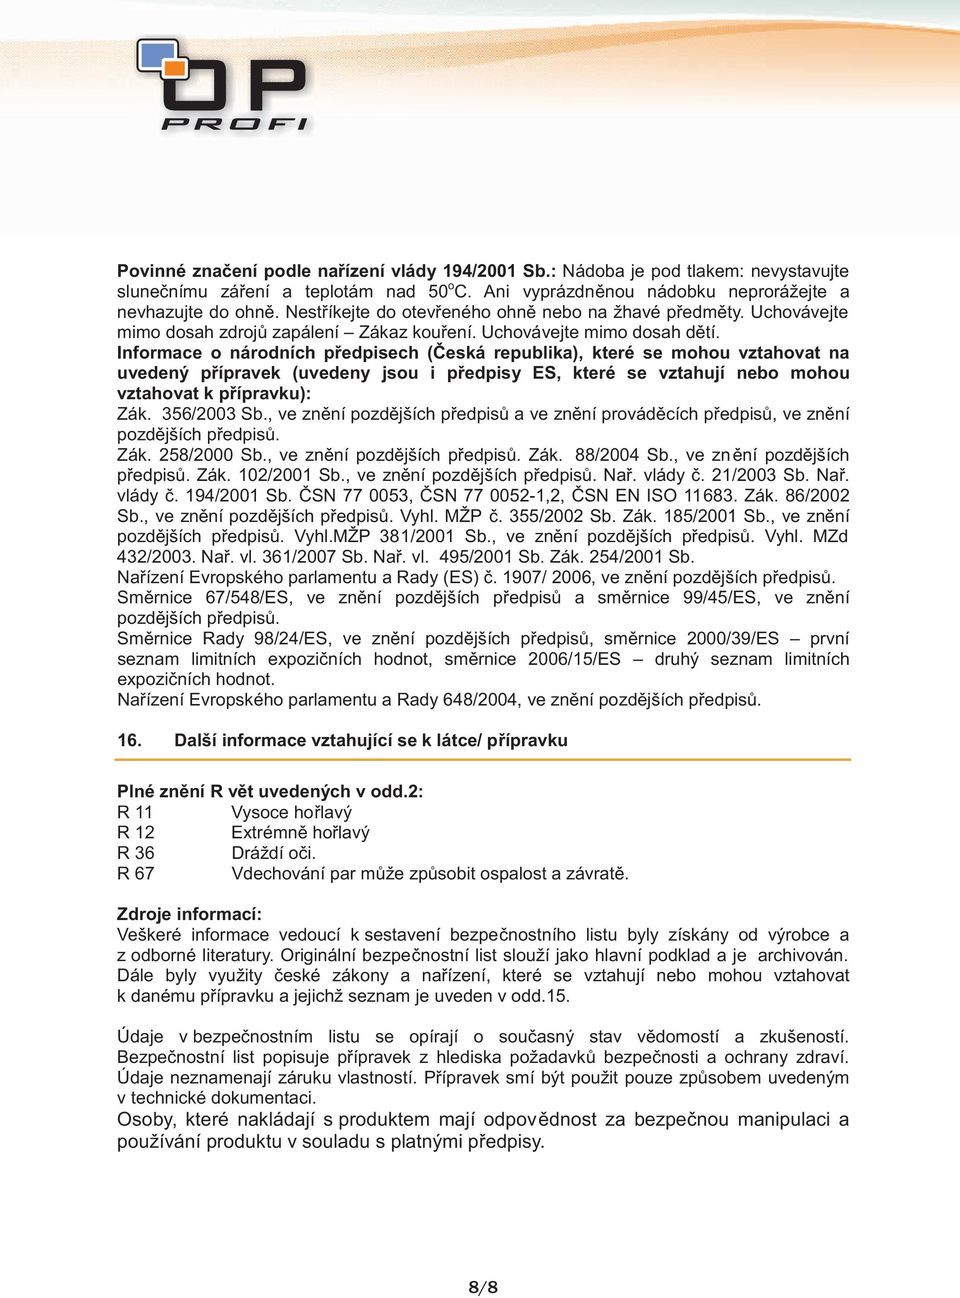 Informace o národních předpisech (Česká republika), které se mohou vztahovat na uvedený přípravek (uvedeny jsou i předpisy ES, které se vztahují nebo mohou vztahovat k přípravku): Zák. 356/2003 Sb.